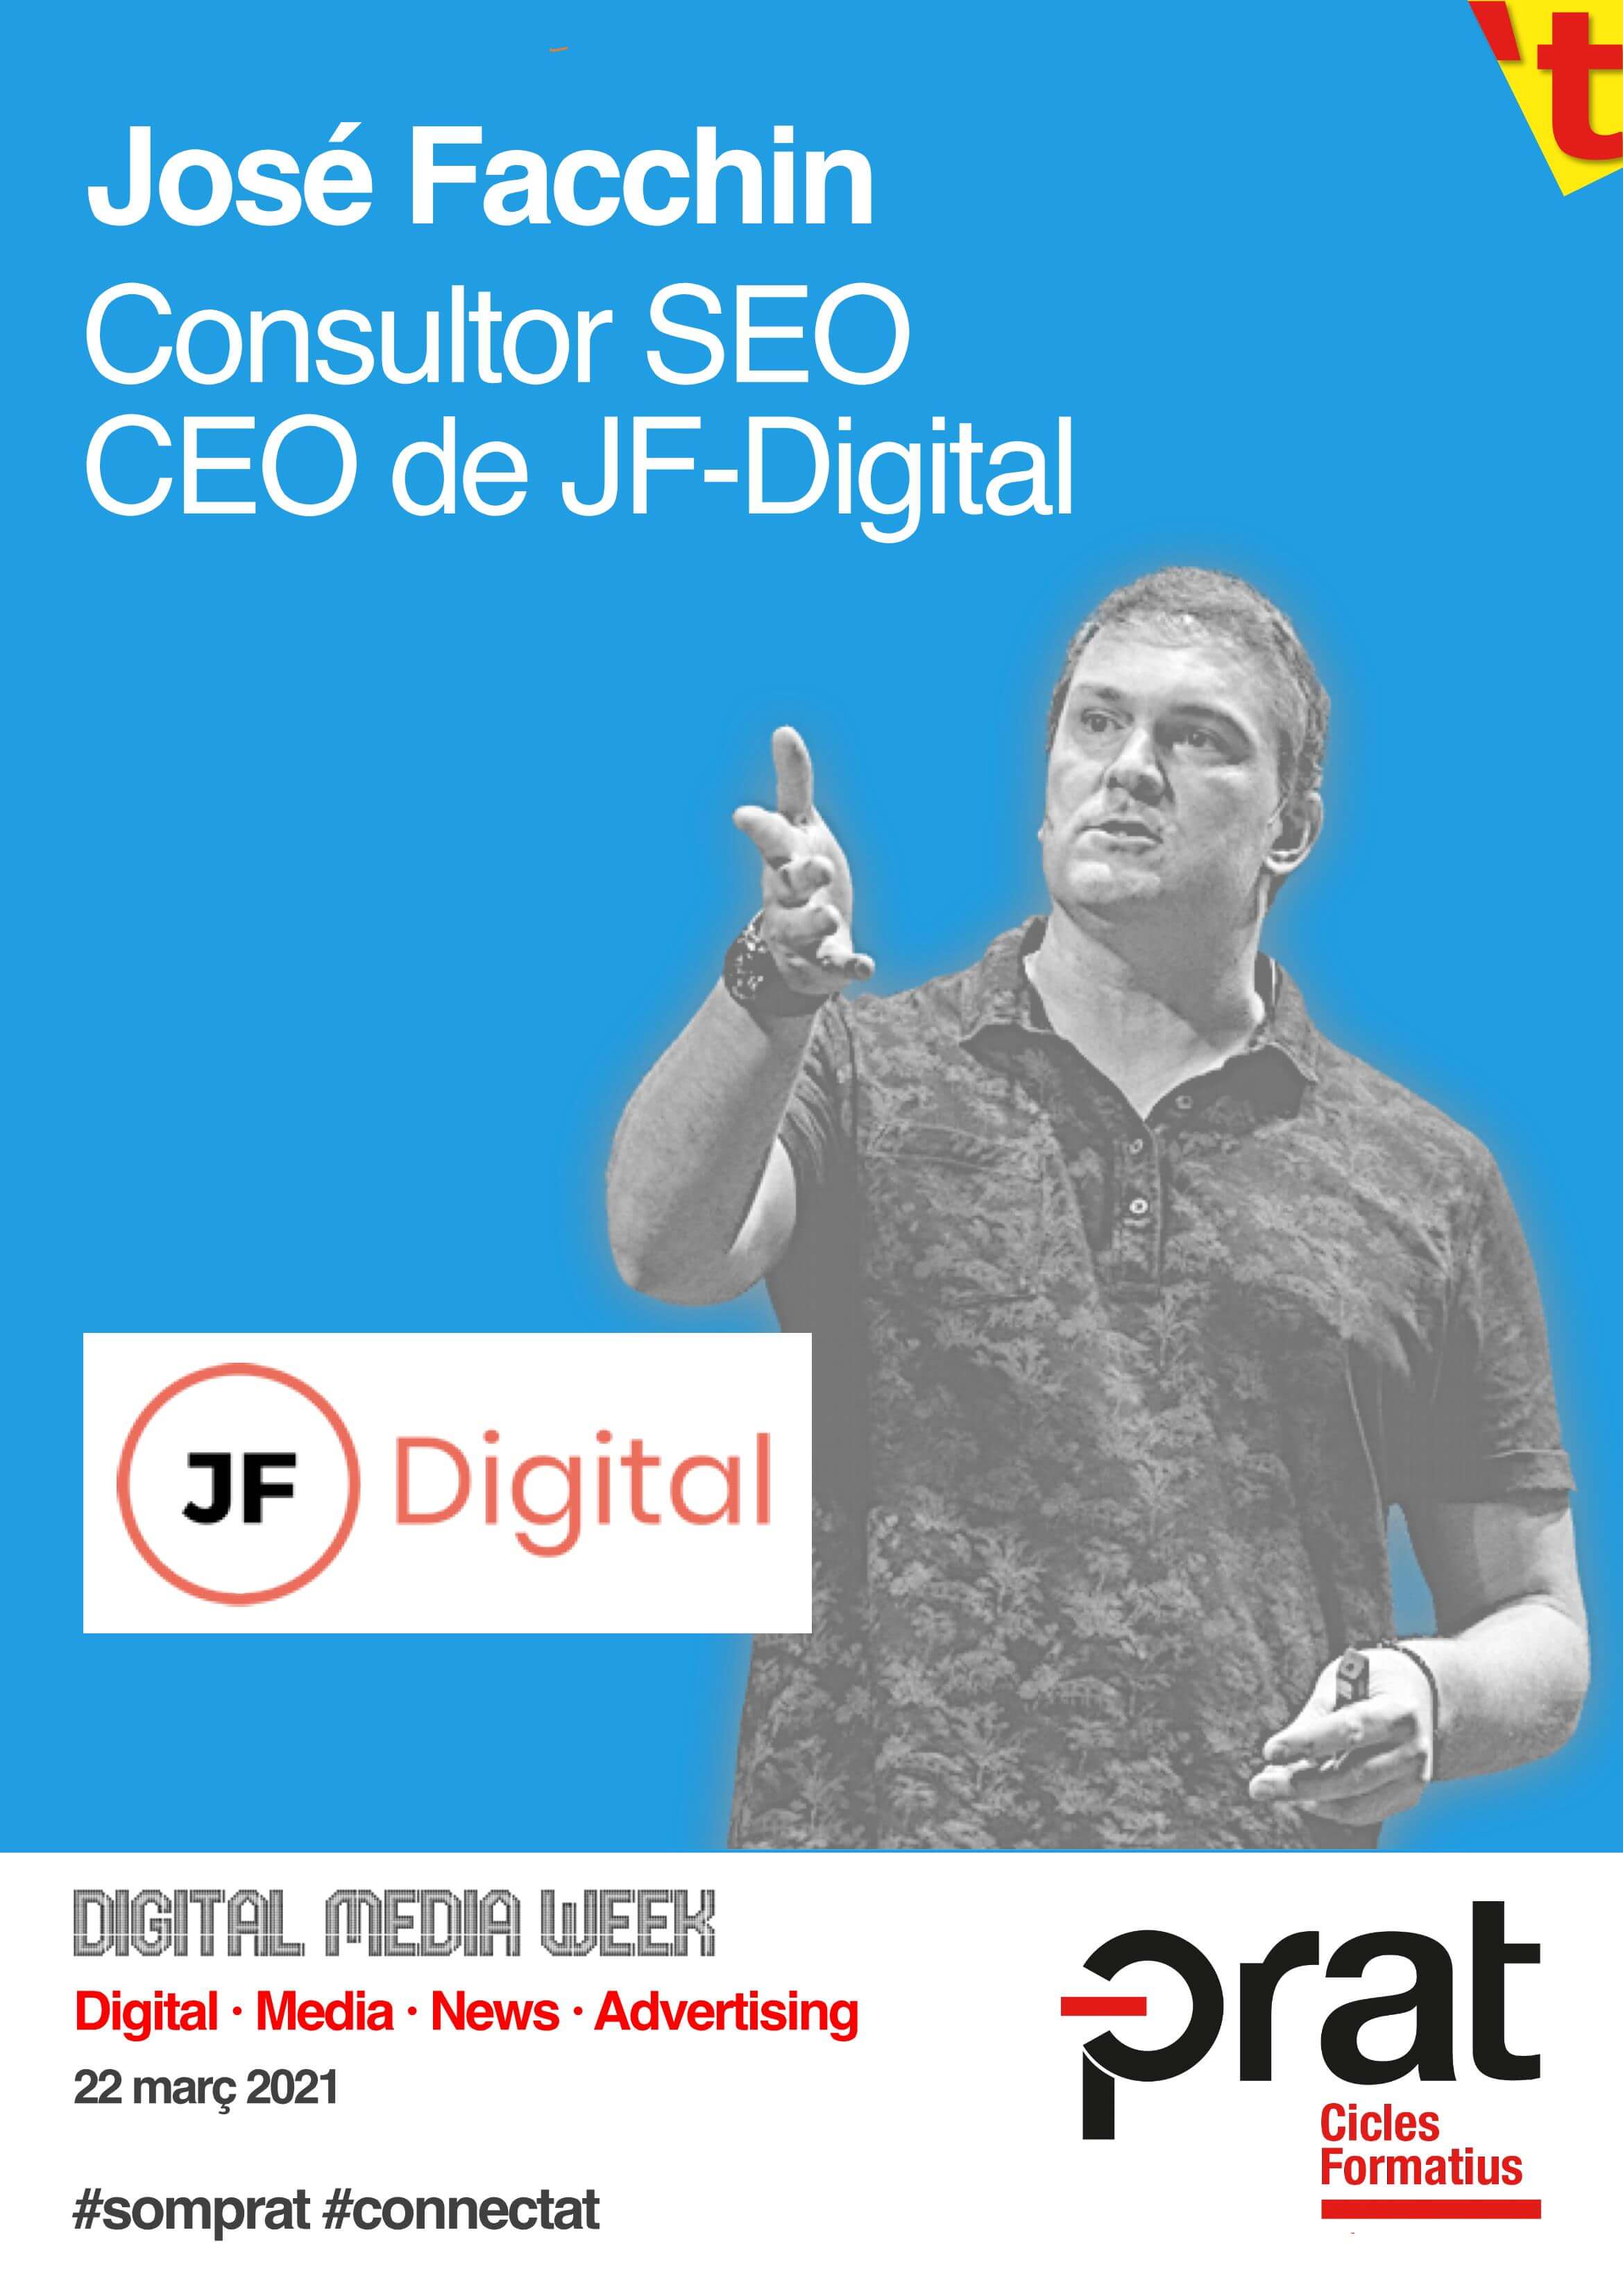 Digital Media Week: José Facchin - Cicle Formatiu de Grau Superior de Màrqueting i Publicitat a Prat Educació